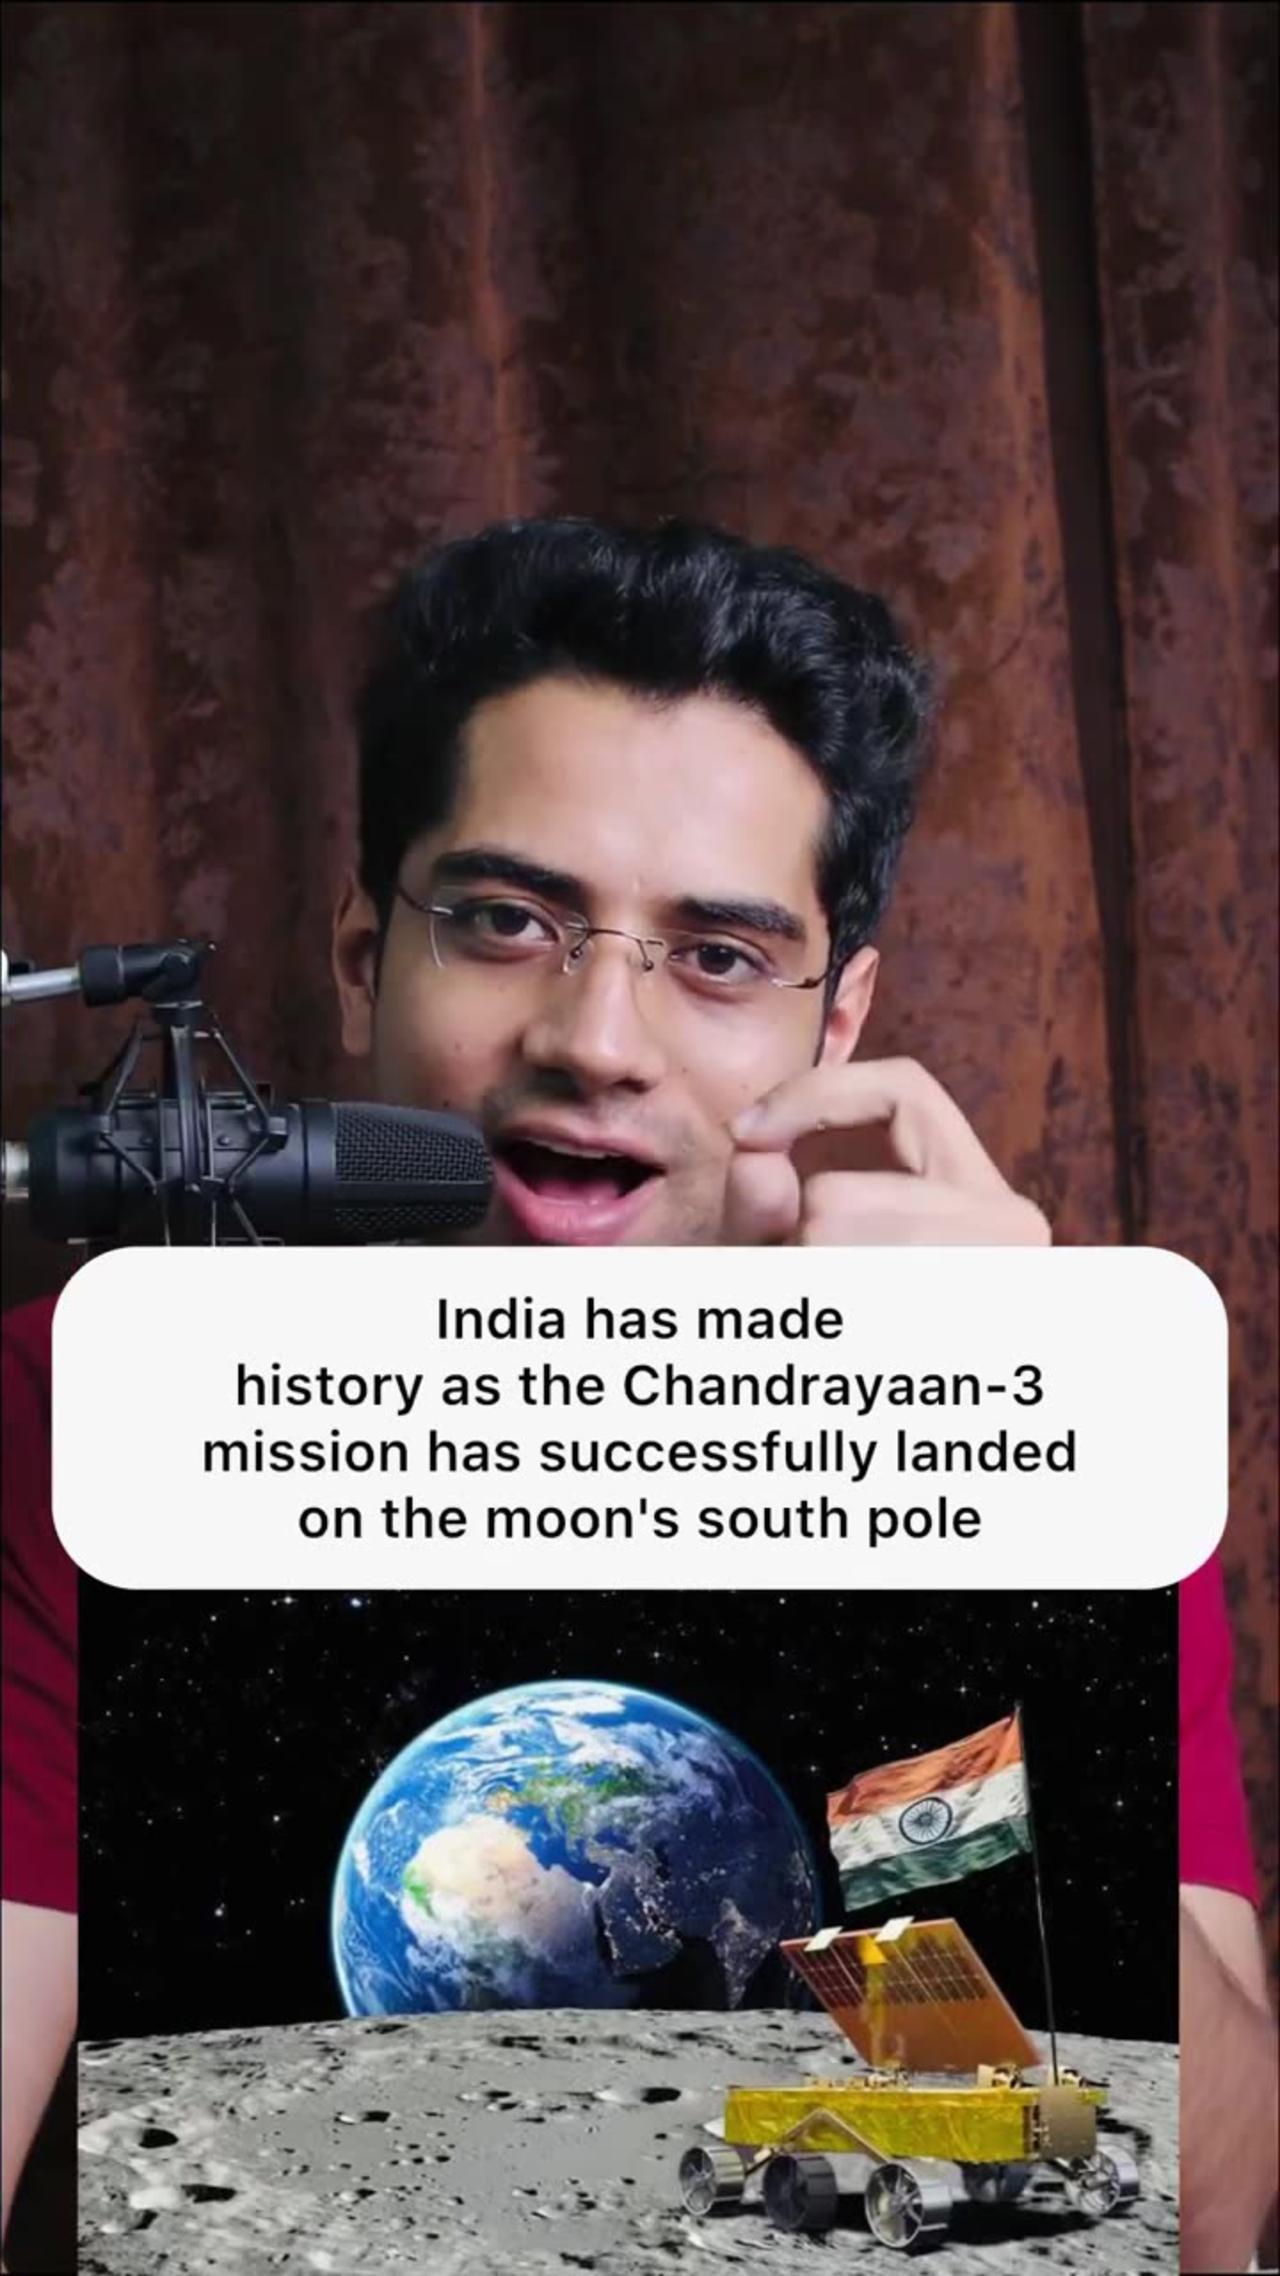 Finally, India created history,,,,,,,